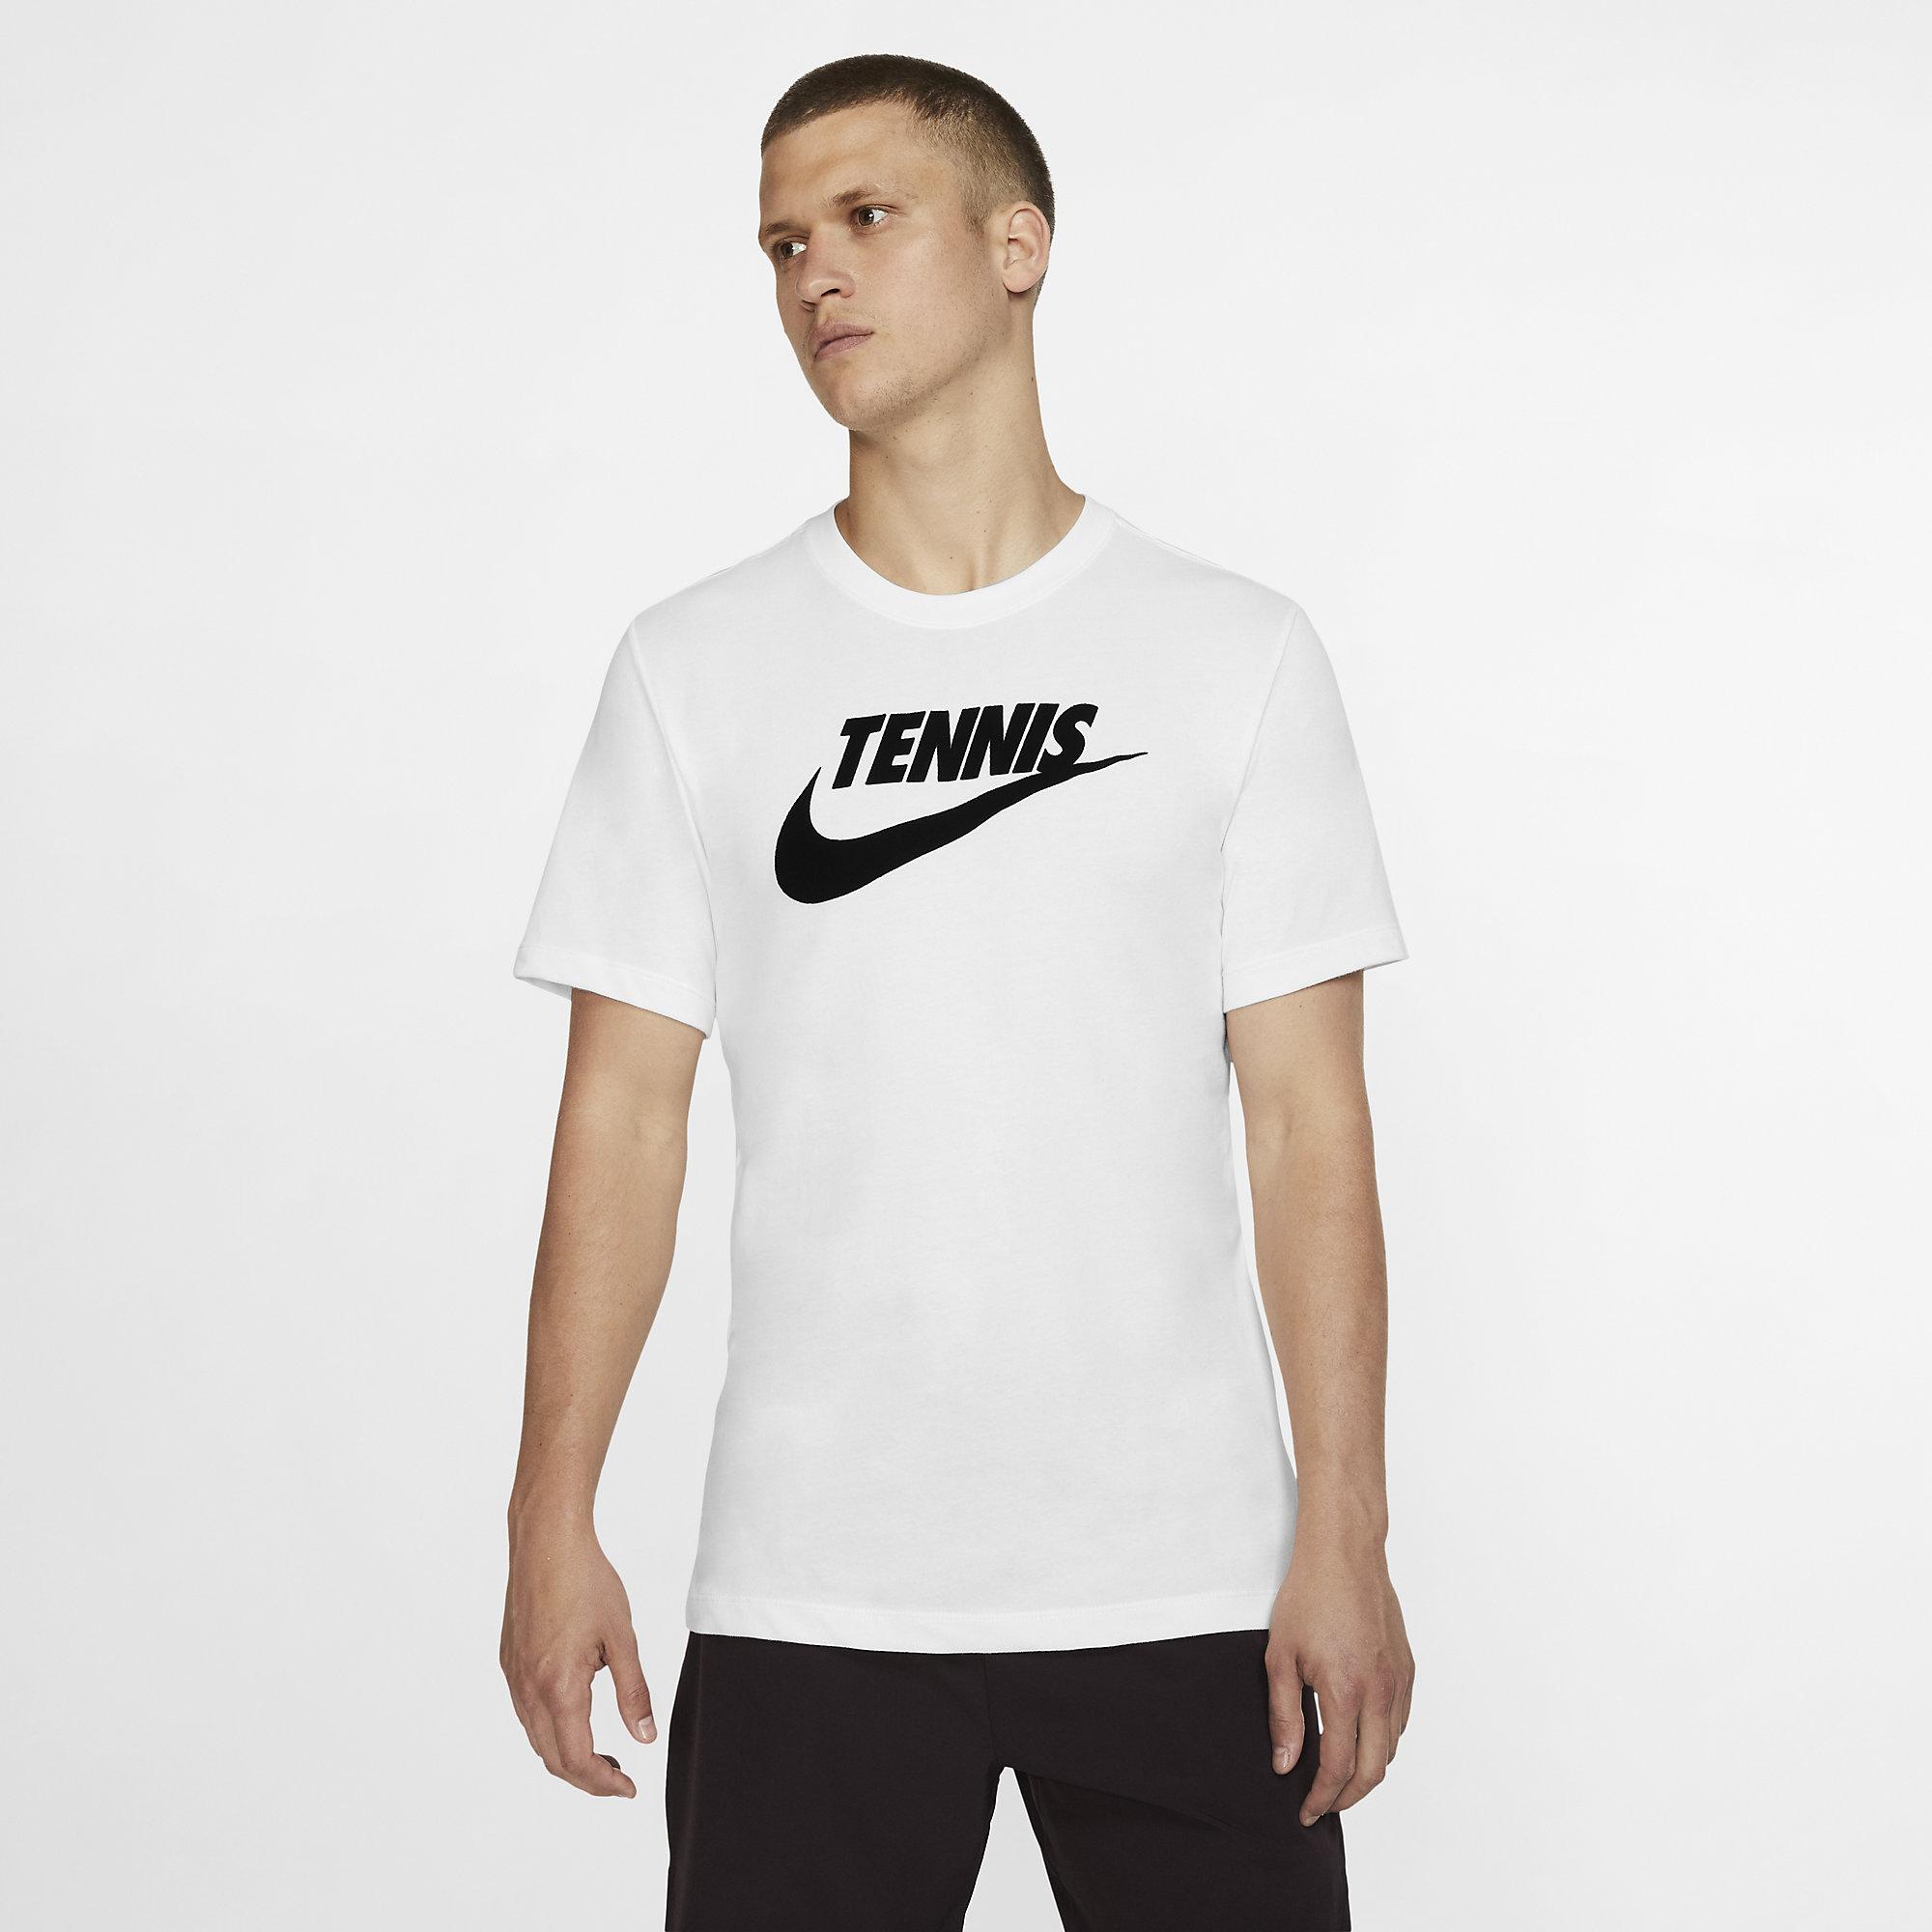 dri fit tennis shirts